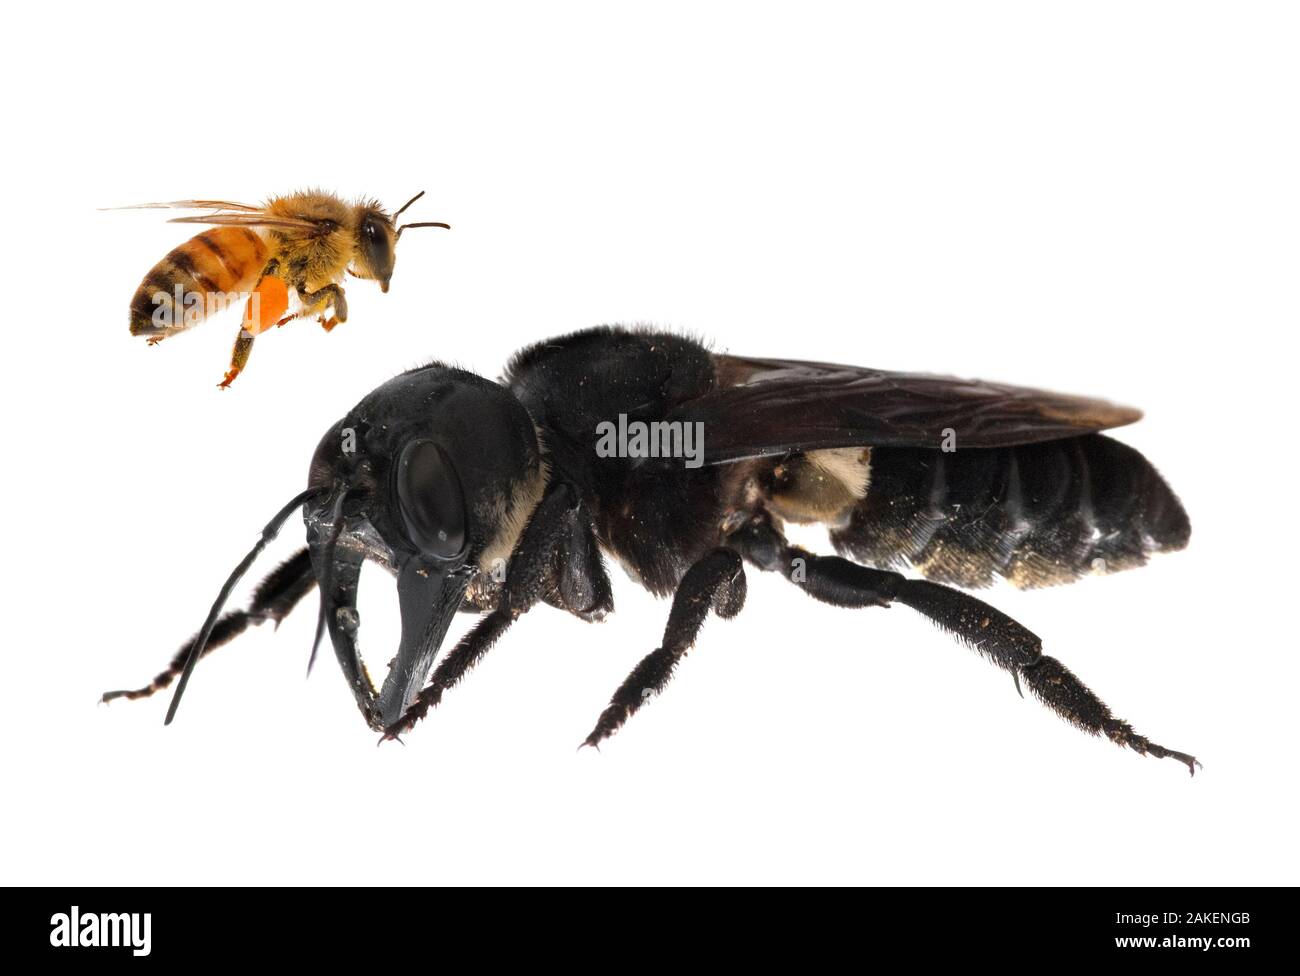 Das zusammengesetzte Bild von Wallace Giant's Biene (Megachile Pluto) mit europäischen Honig Biene (Apis melifera). Dies ist der weltweit größte Biene, die ca. 4 mal größer als eine Europäische Honigbiene. Eines der ersten Bilder eines lebenden Mitglied dieser Spezies. Molukken, Indonesien. Januar 2019 Stockfoto